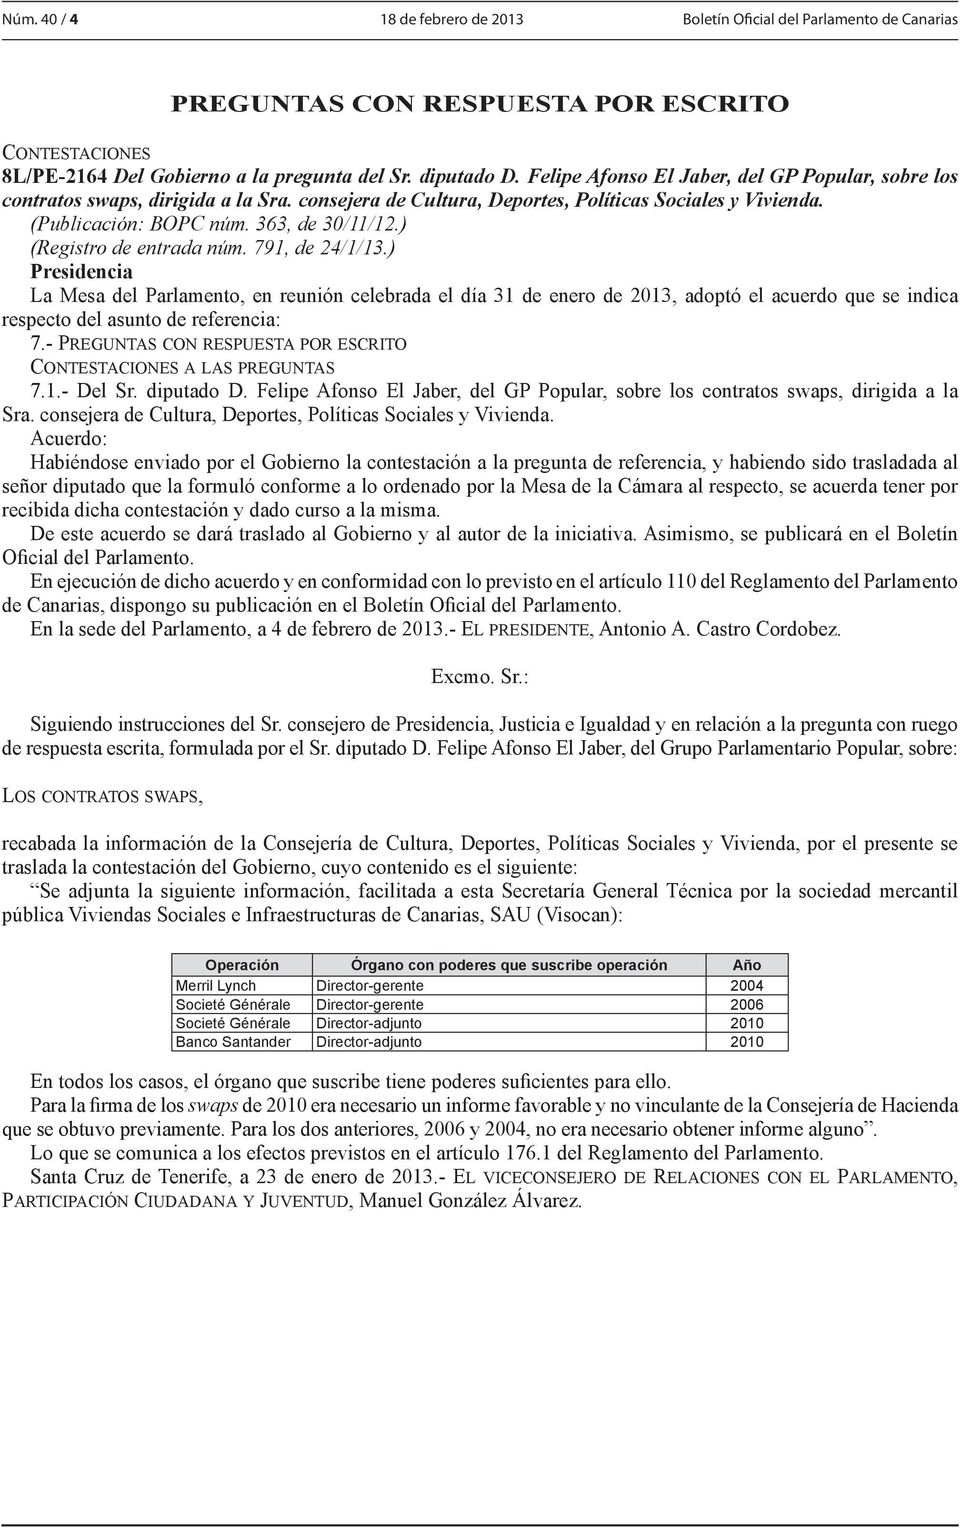 ) (Registro de entrada núm. 791, de 24/1/13.) 7.1.- Del Sr. diputado D. Felipe Afonso El Jaber, del GP Popular, sobre los contratos swaps, dirigida a la Sra.